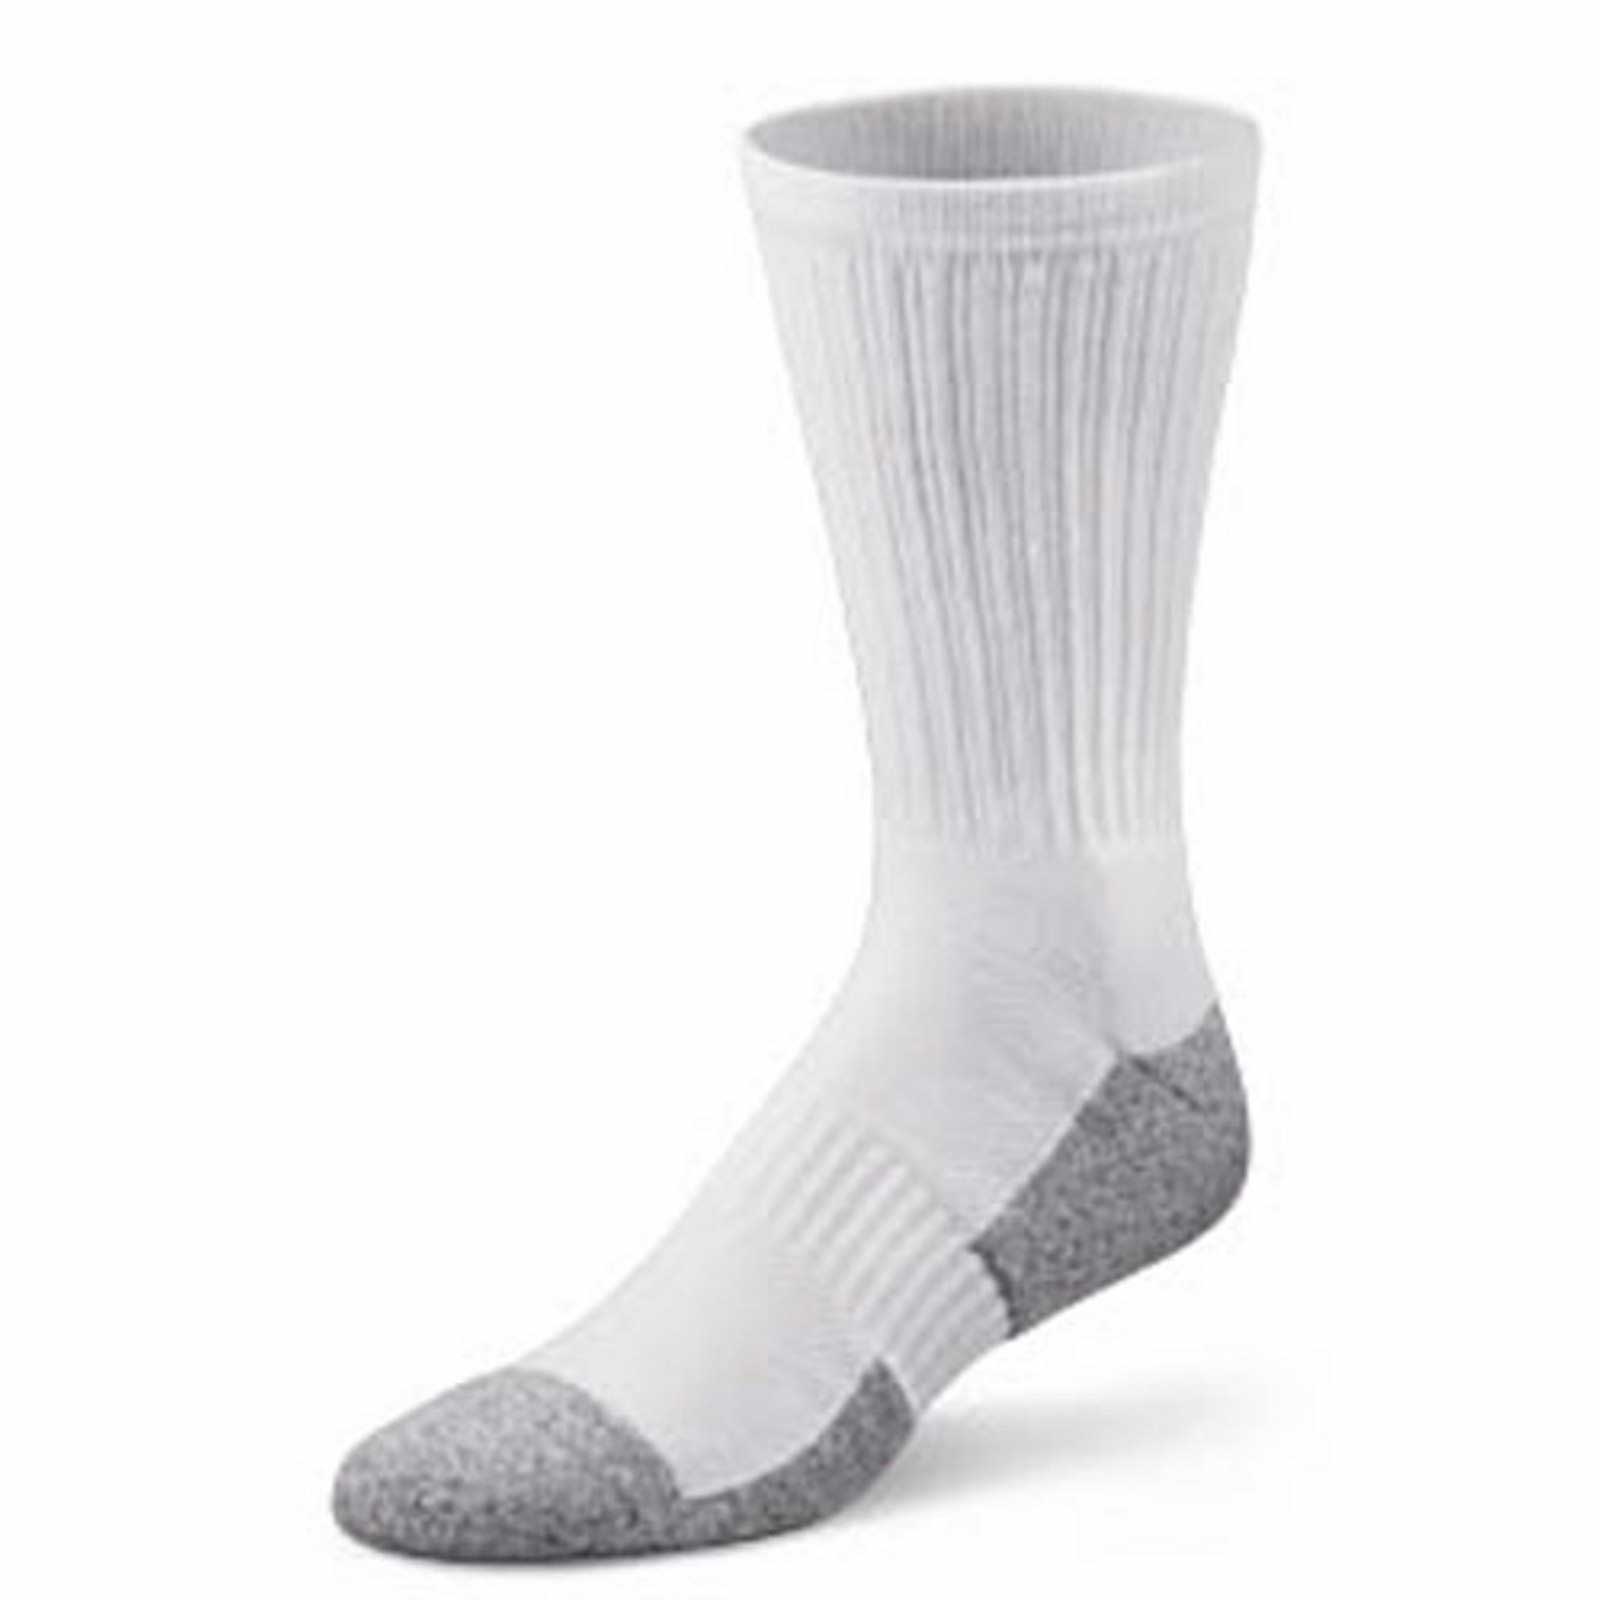 Dr. Comfort Crew Socks (1 Pair) - Men's Therapeutic Diabetic Socks - Athletic, Casual, Dress